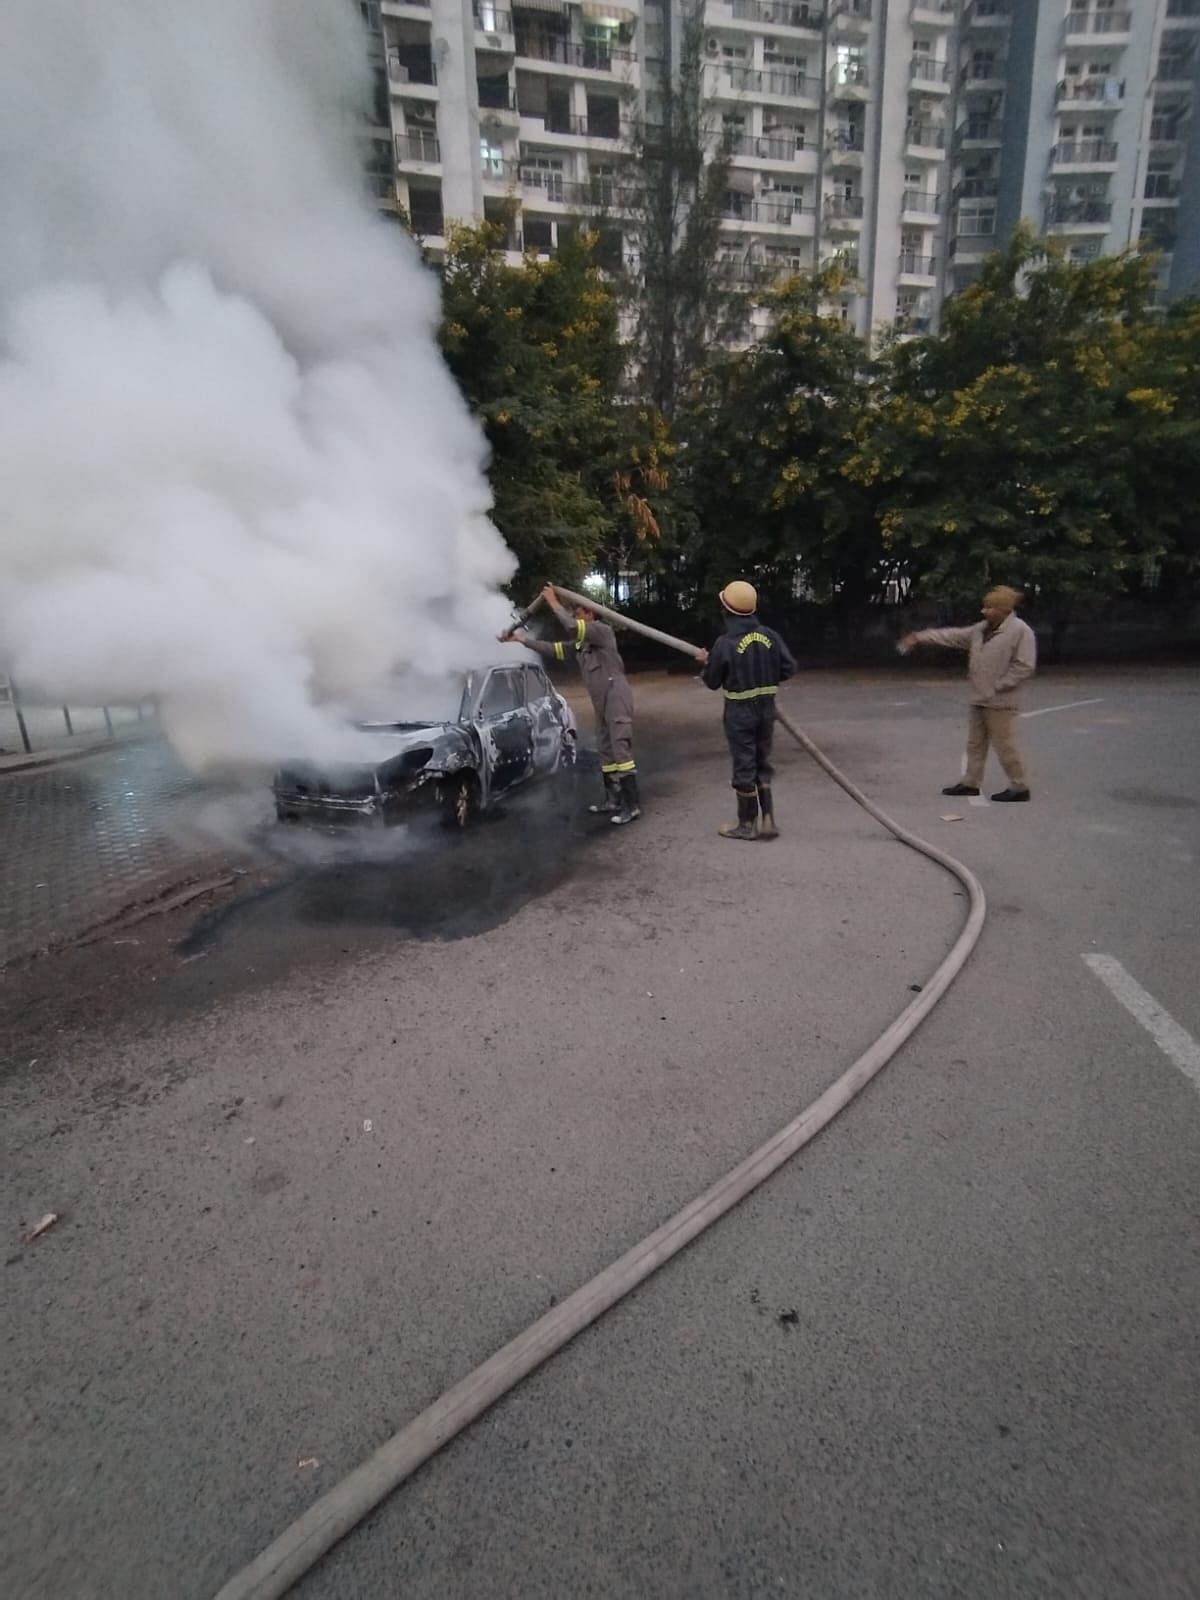 Noida के सेक्टर 119 की आम्रपाली प्लेटिनम सोसायटी के बाहर आकर खड़ी हुई, ठीक 3 मिनट बाद उसमें आग लग गई.